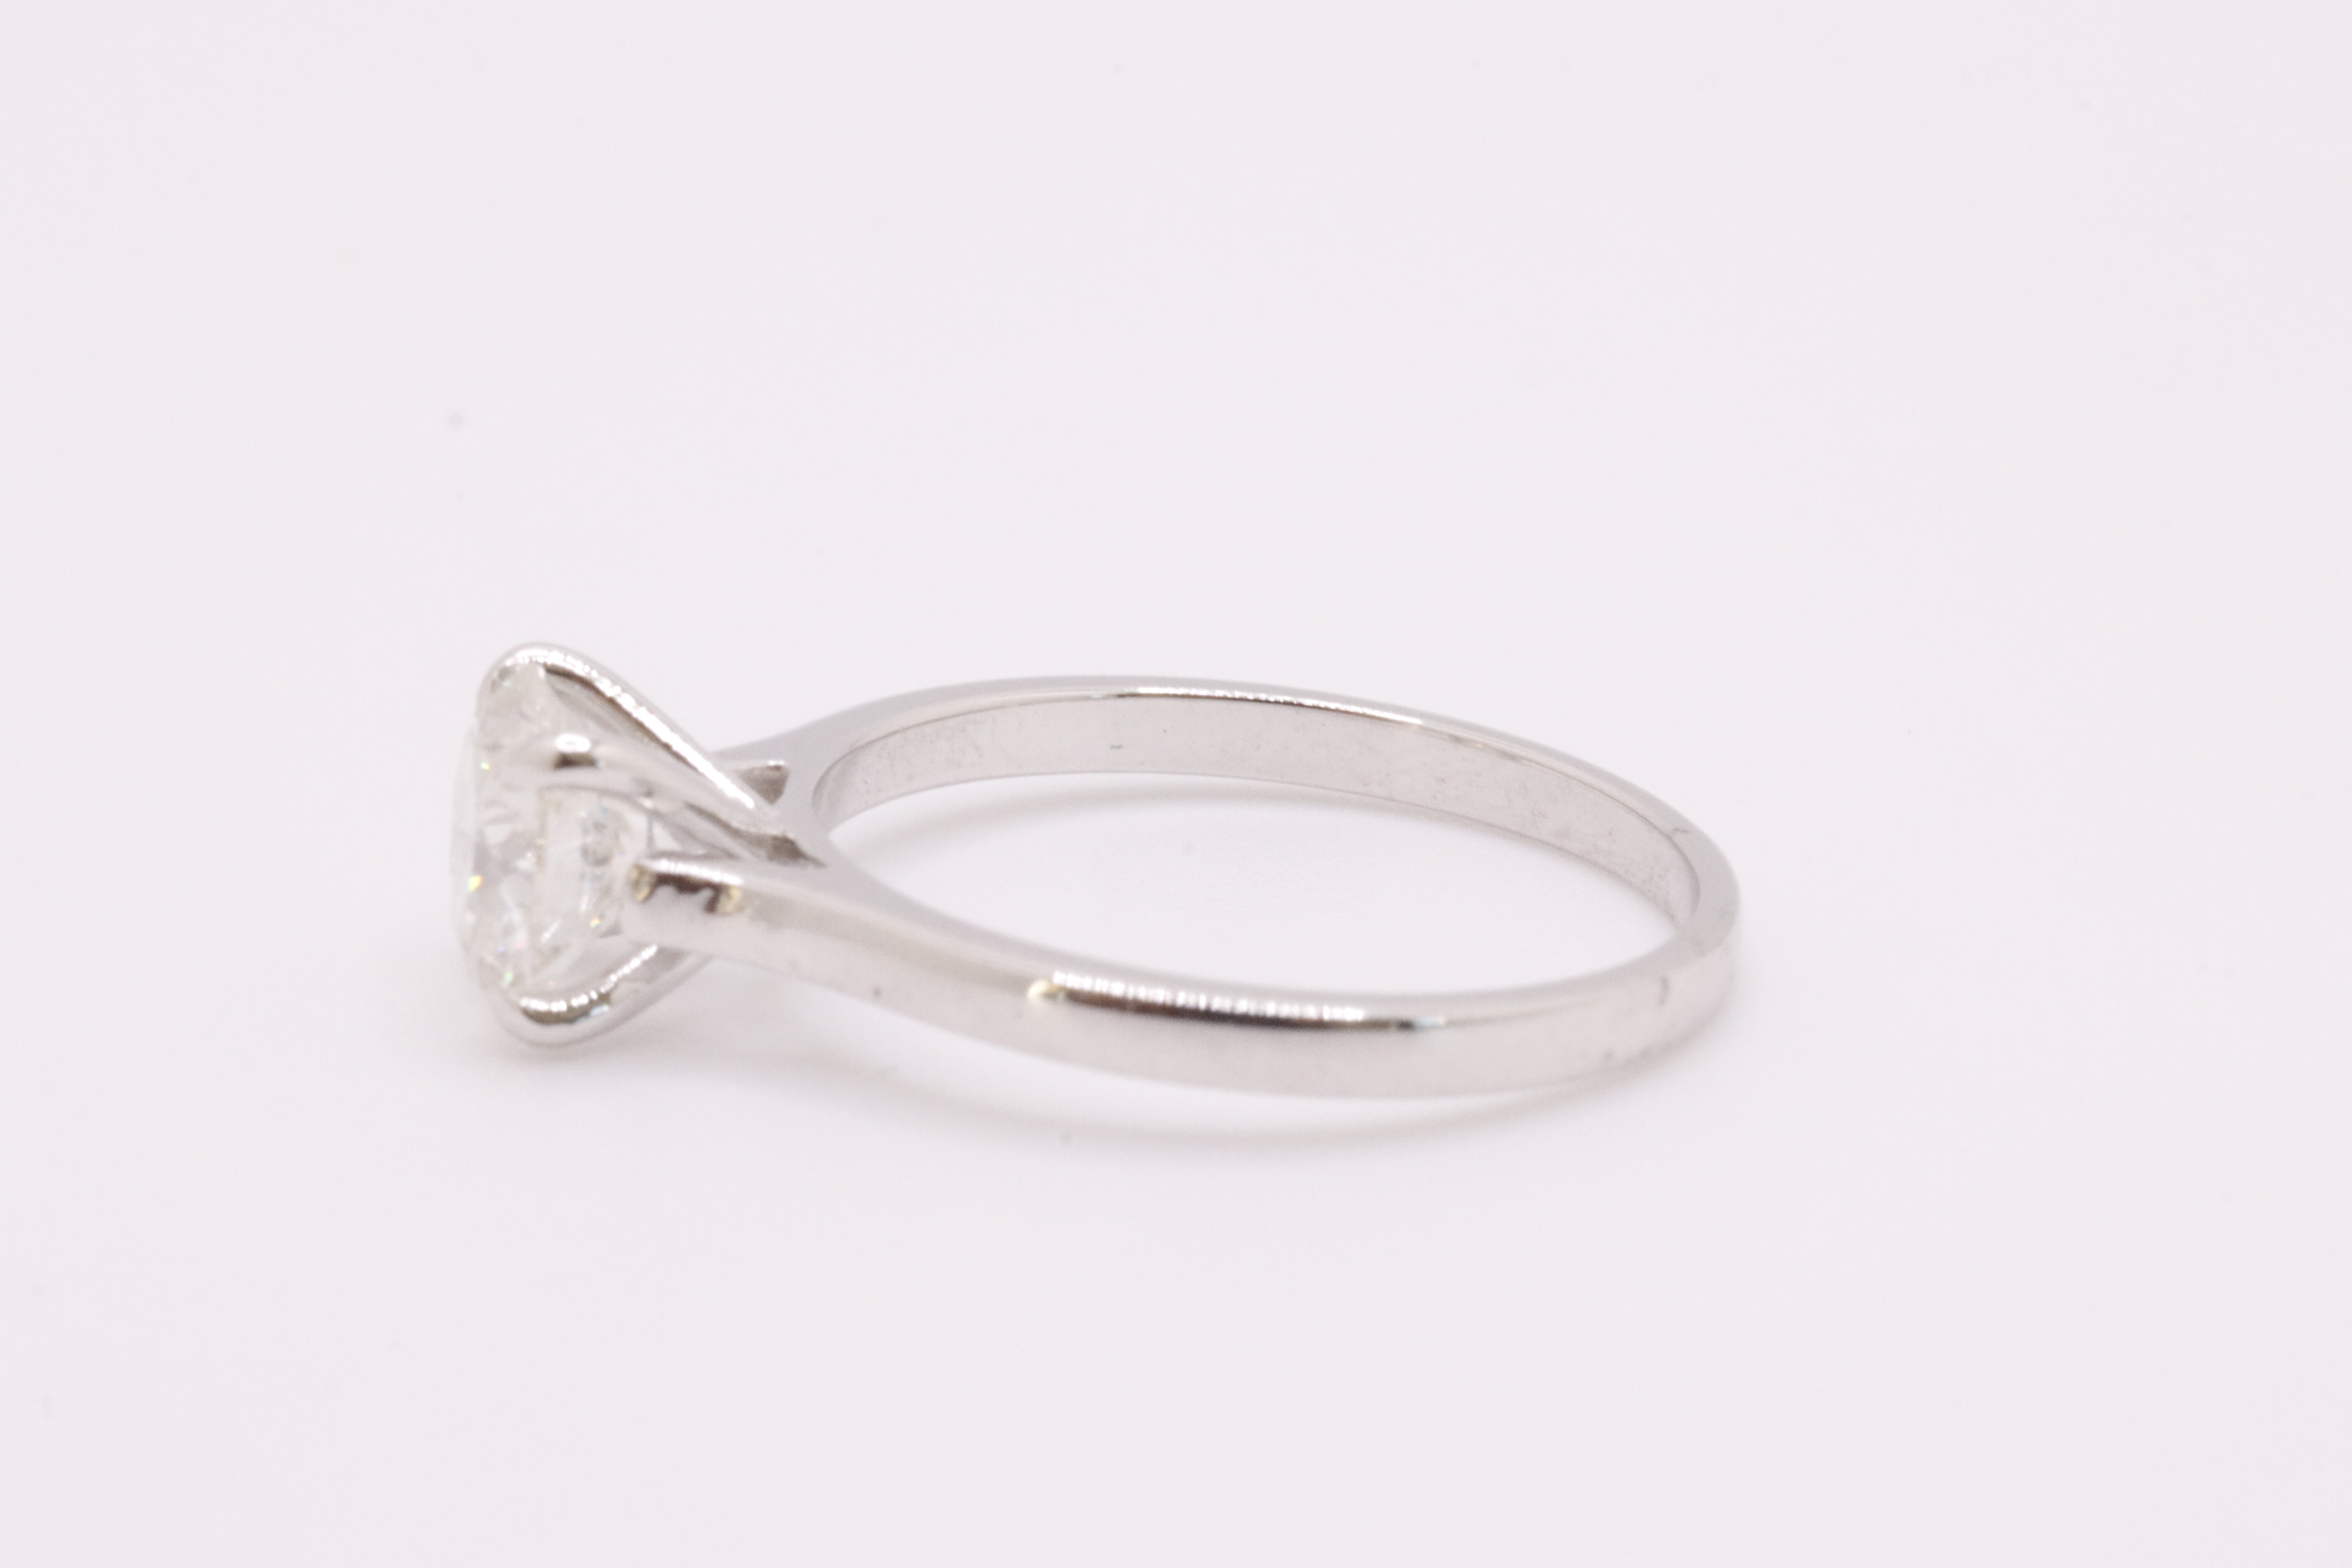 Round Brilliant Cut Natural Diamond Ring 1.09 Carat I Colour SI2 Clarity EX EX EX - GIA - Image 7 of 10